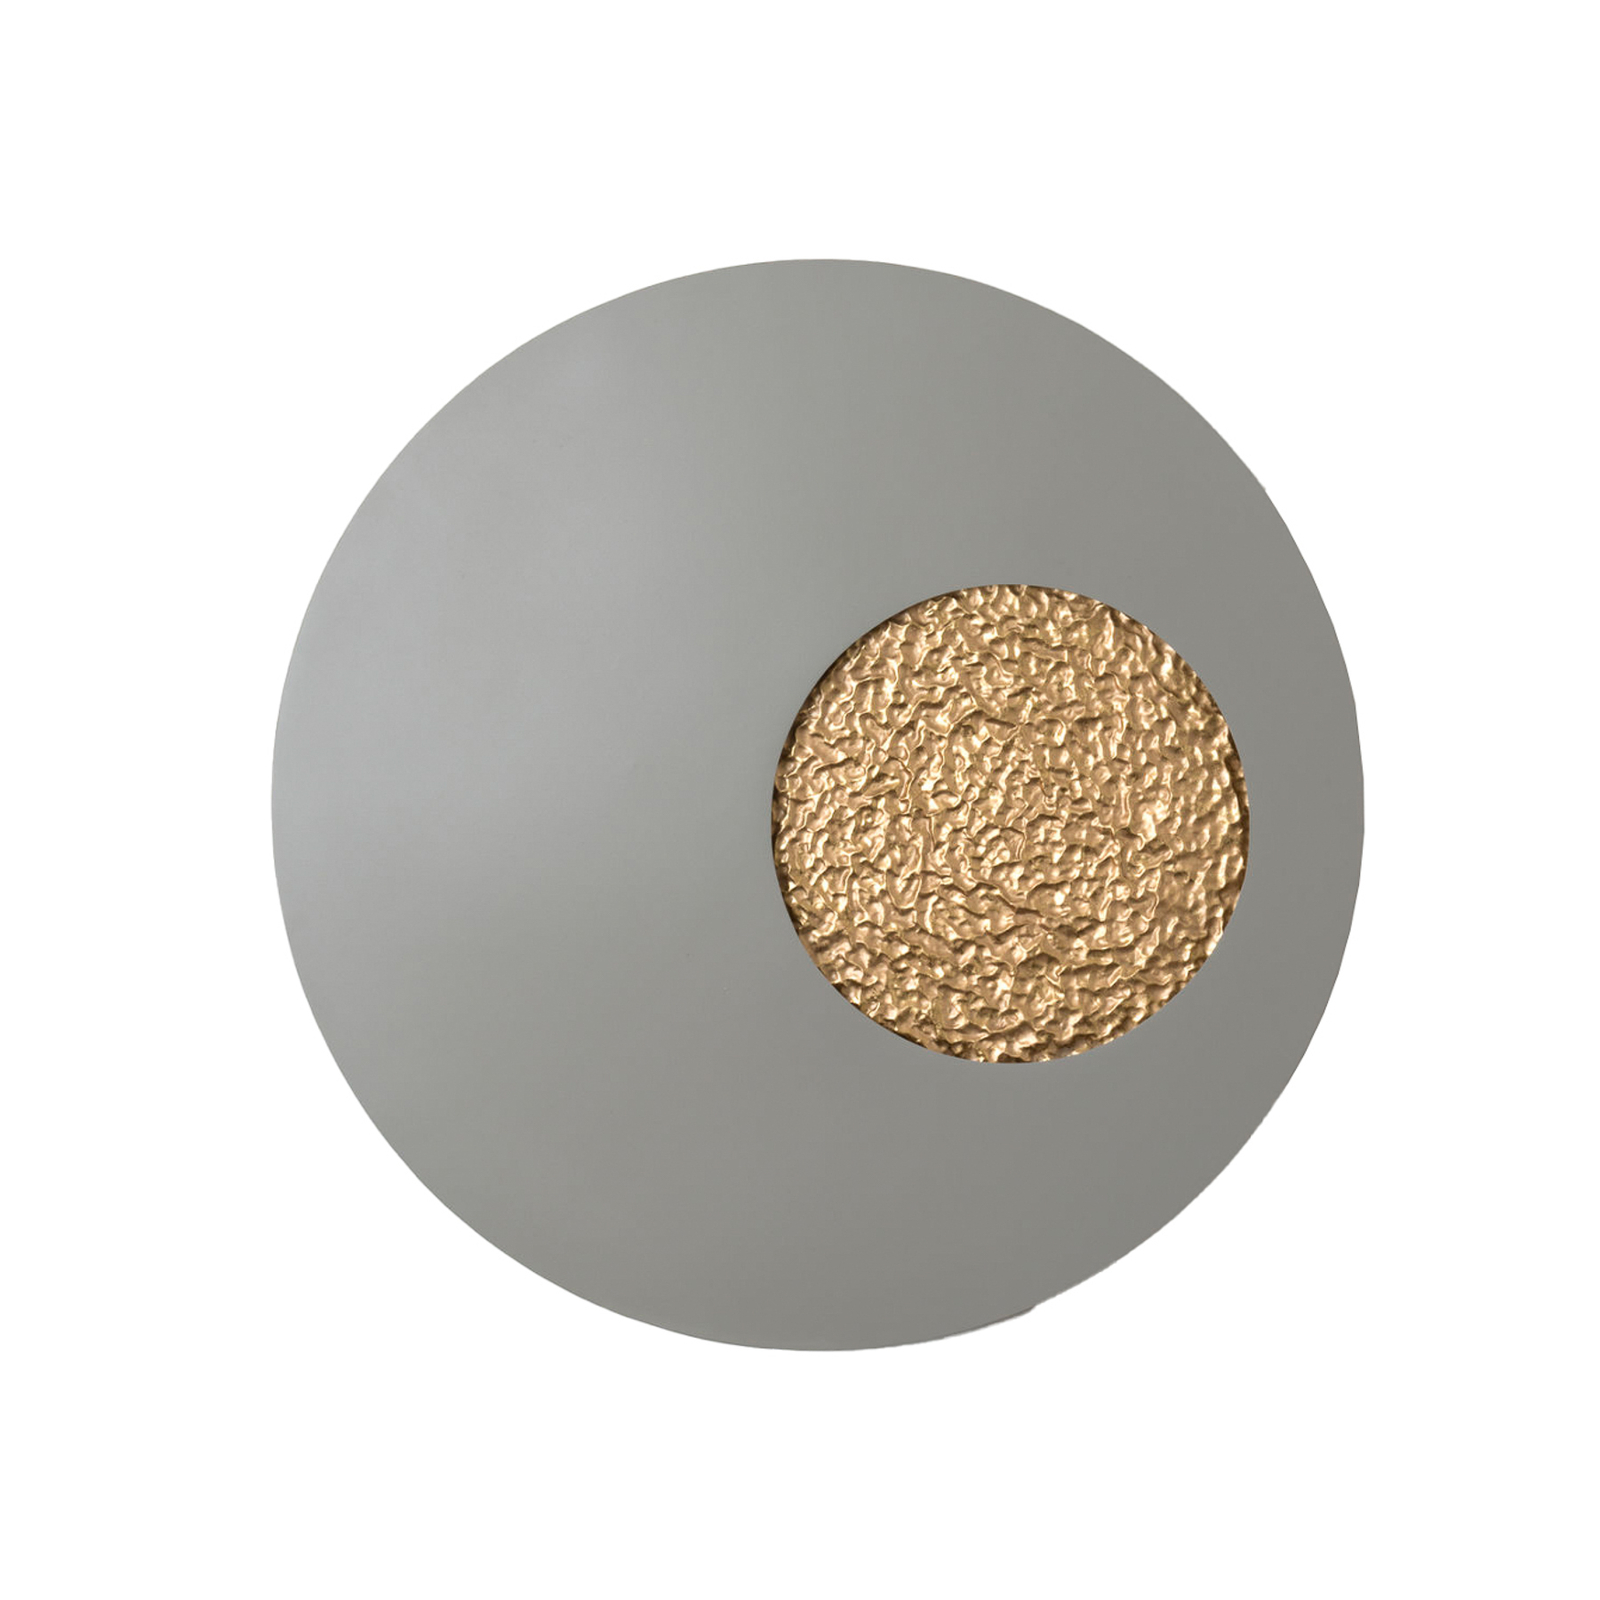 LED-væglampe Luna, grå/guld-farvet, Ø 80 cm, jern